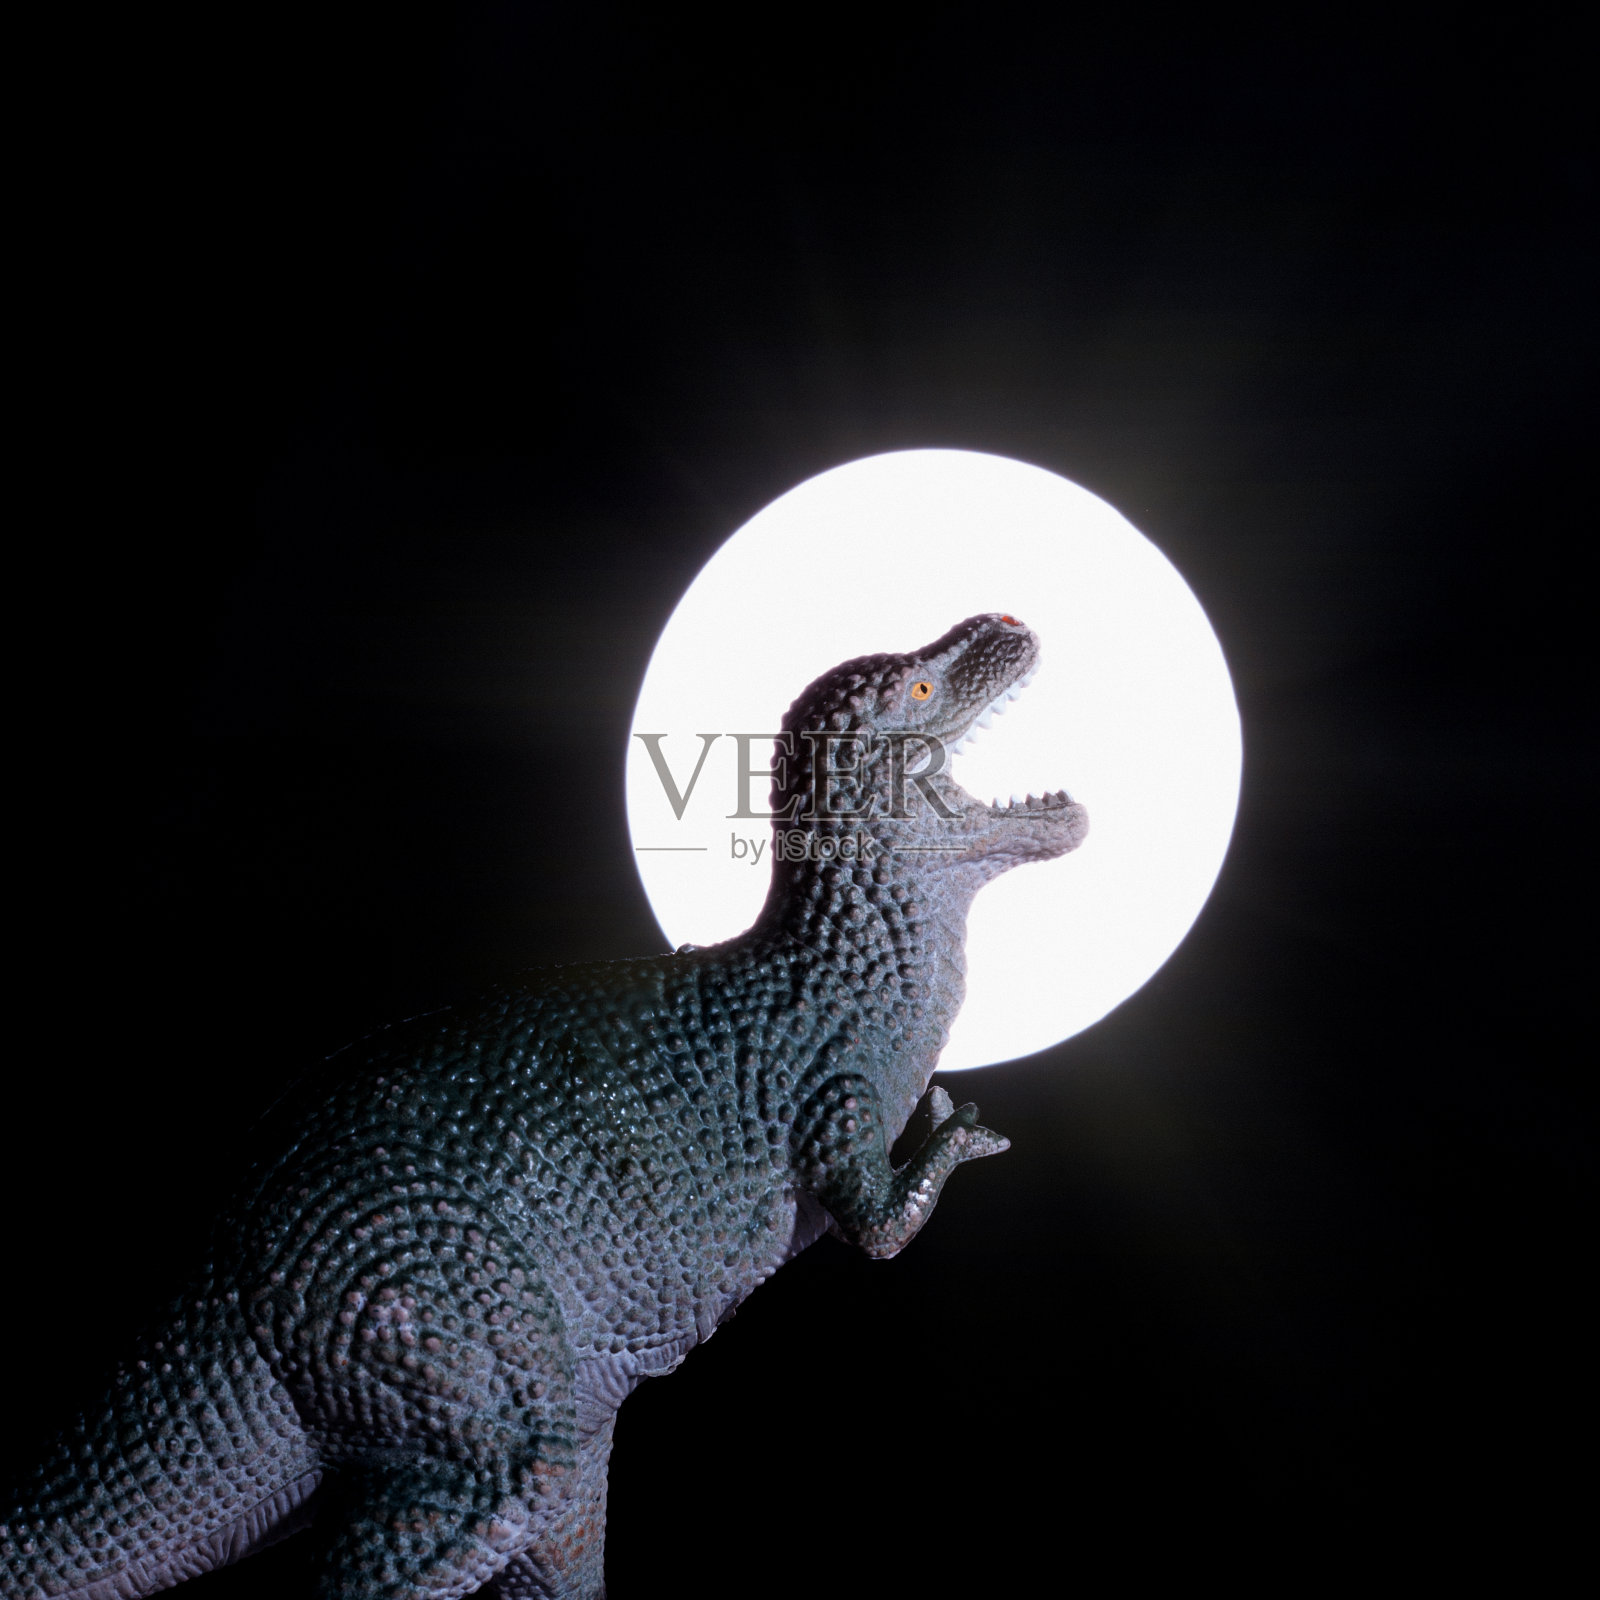 可怕的霸王龙在满月时咆哮照片摄影图片